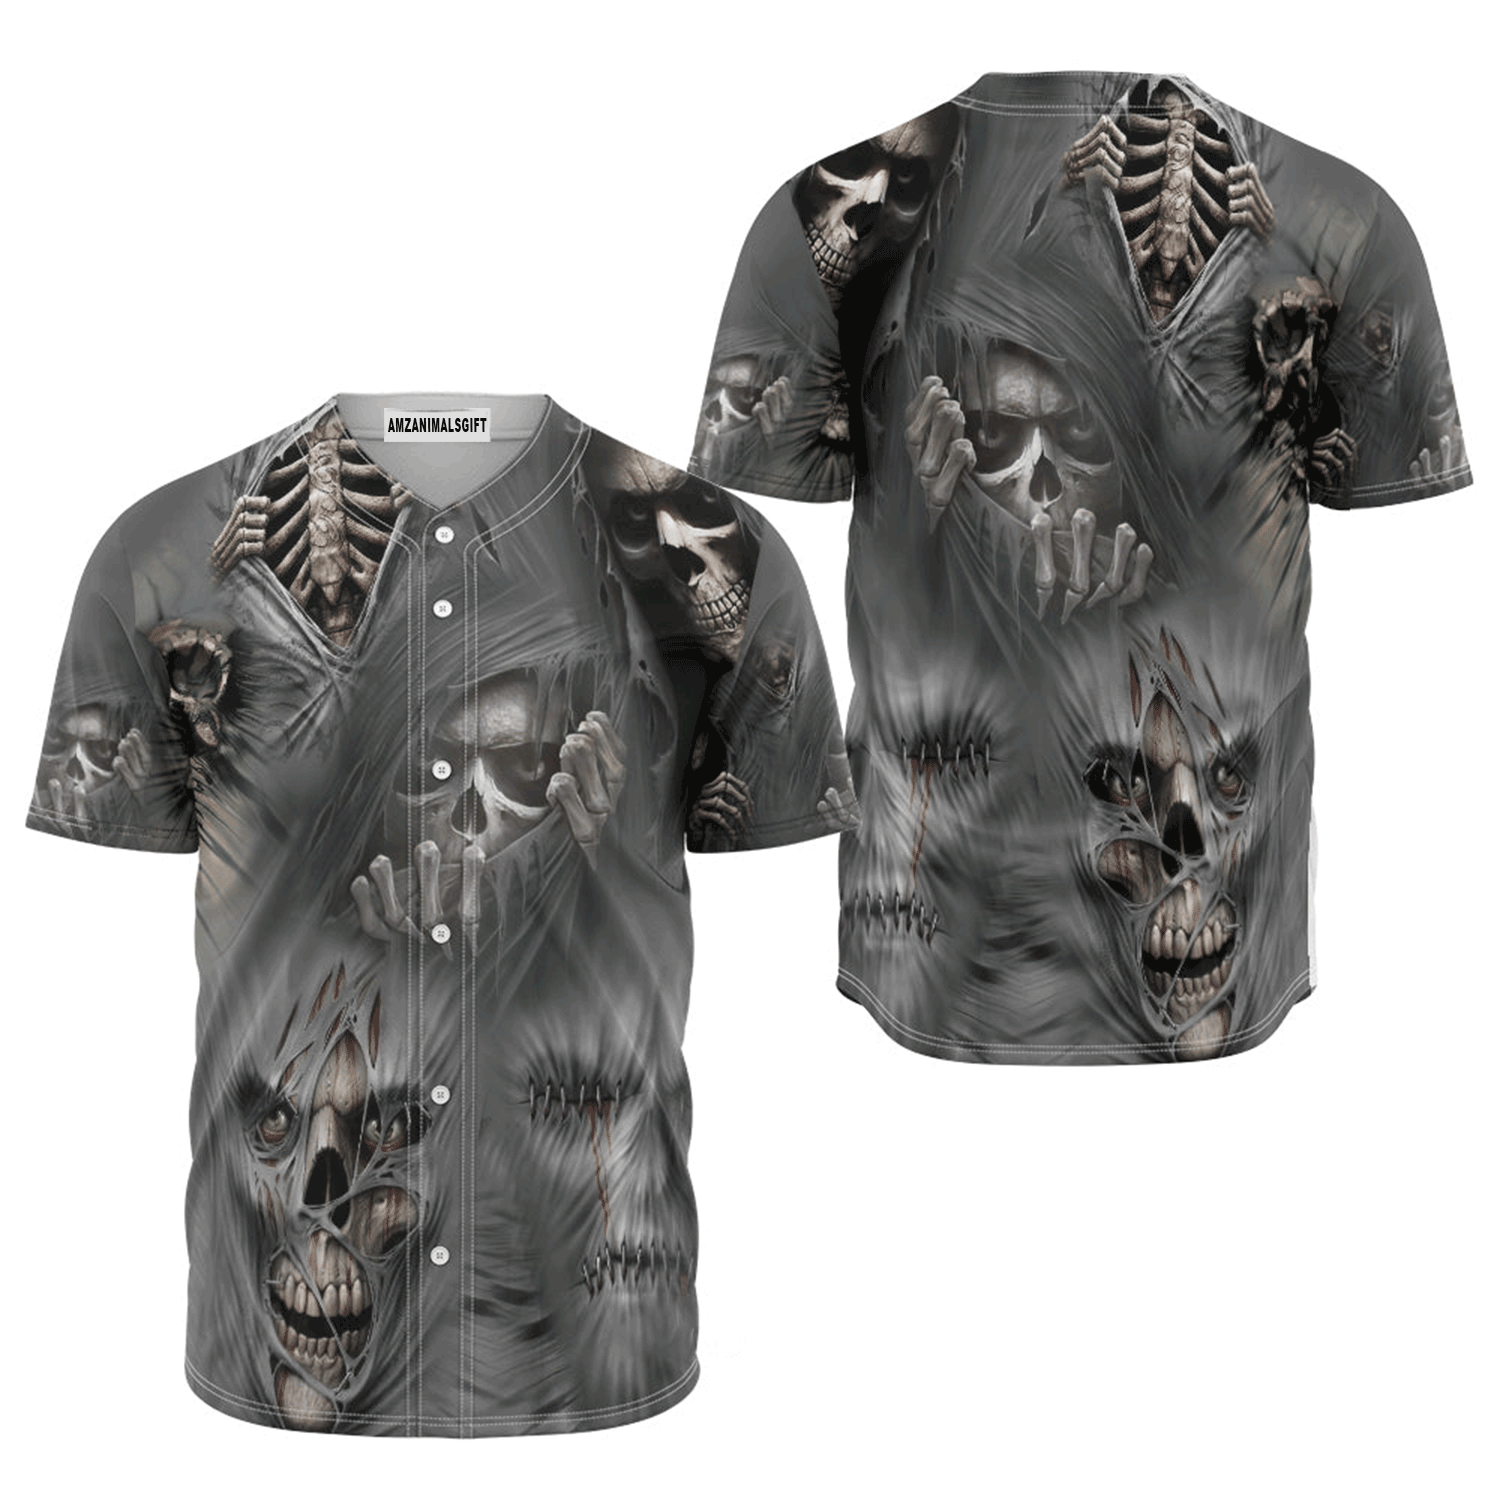 Skull Baseball Jersey Shirt - Skull What Scares You Excites Me Baseball Jersey Shirt For Baseball Lover